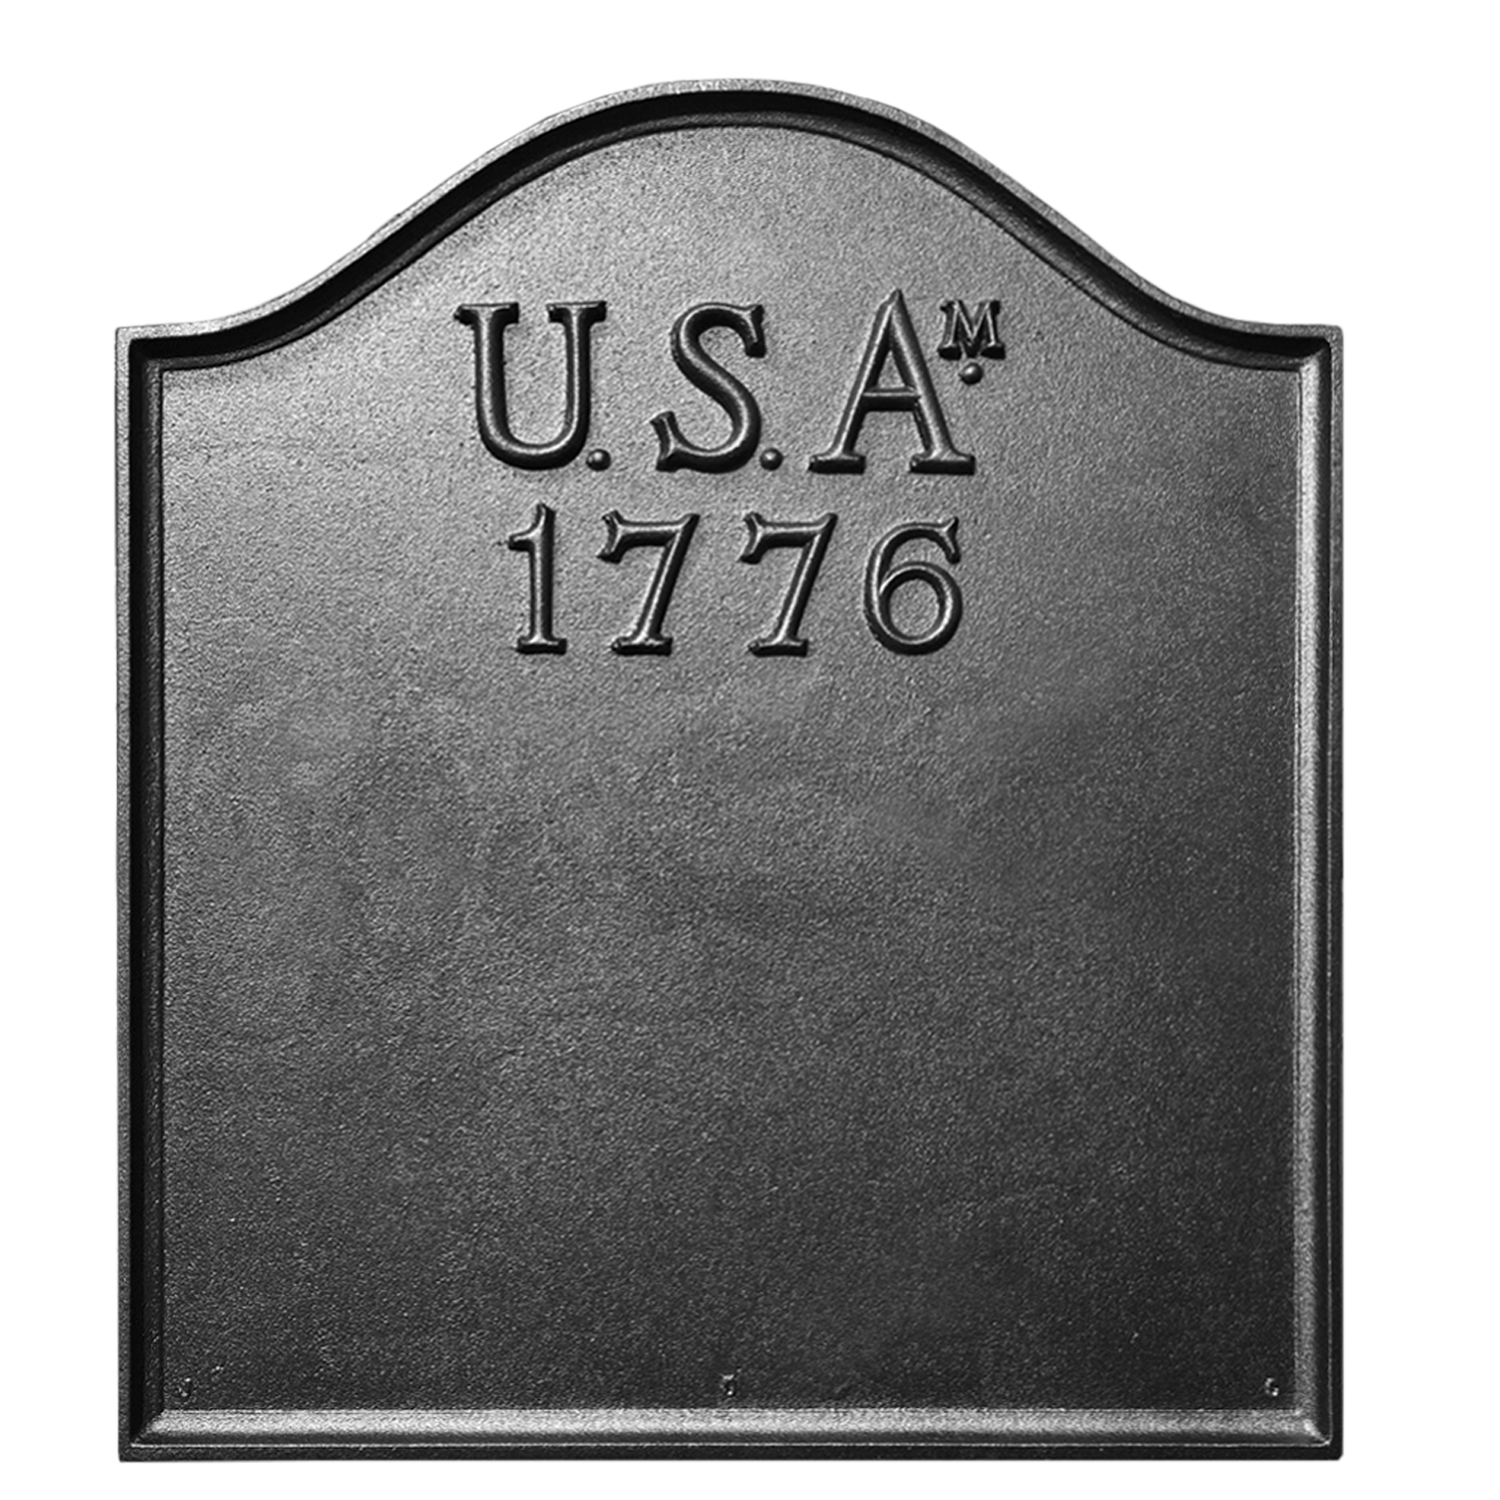 USA 1776 on Plain Panel Fireback